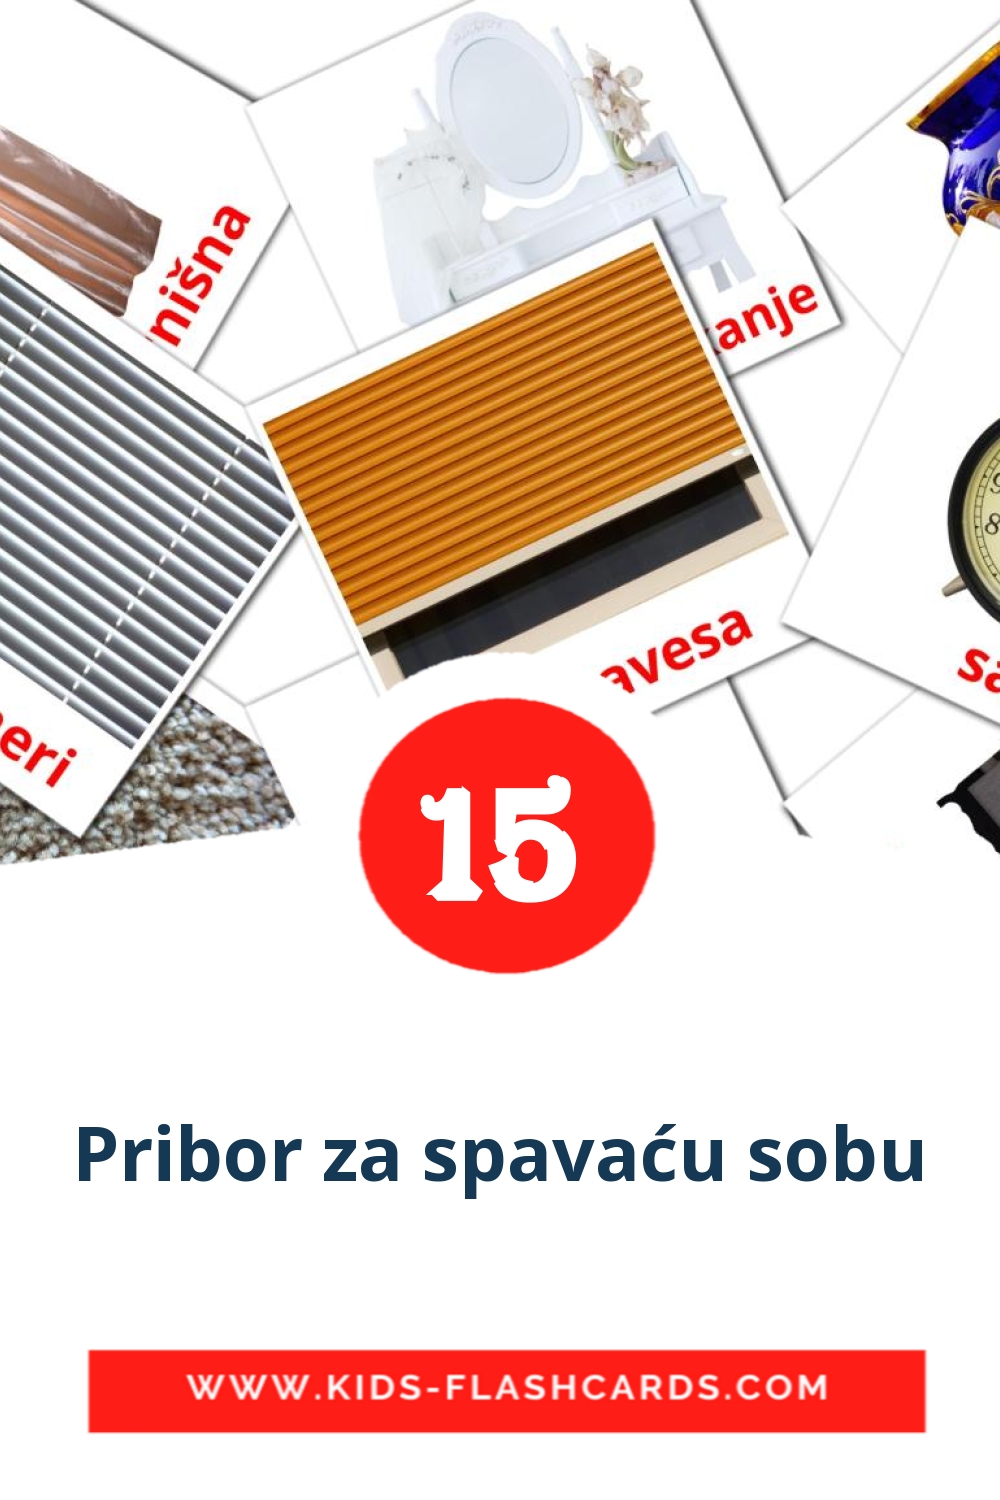 18 Pribor za spavaću sobu Picture Cards for Kindergarden in serbian